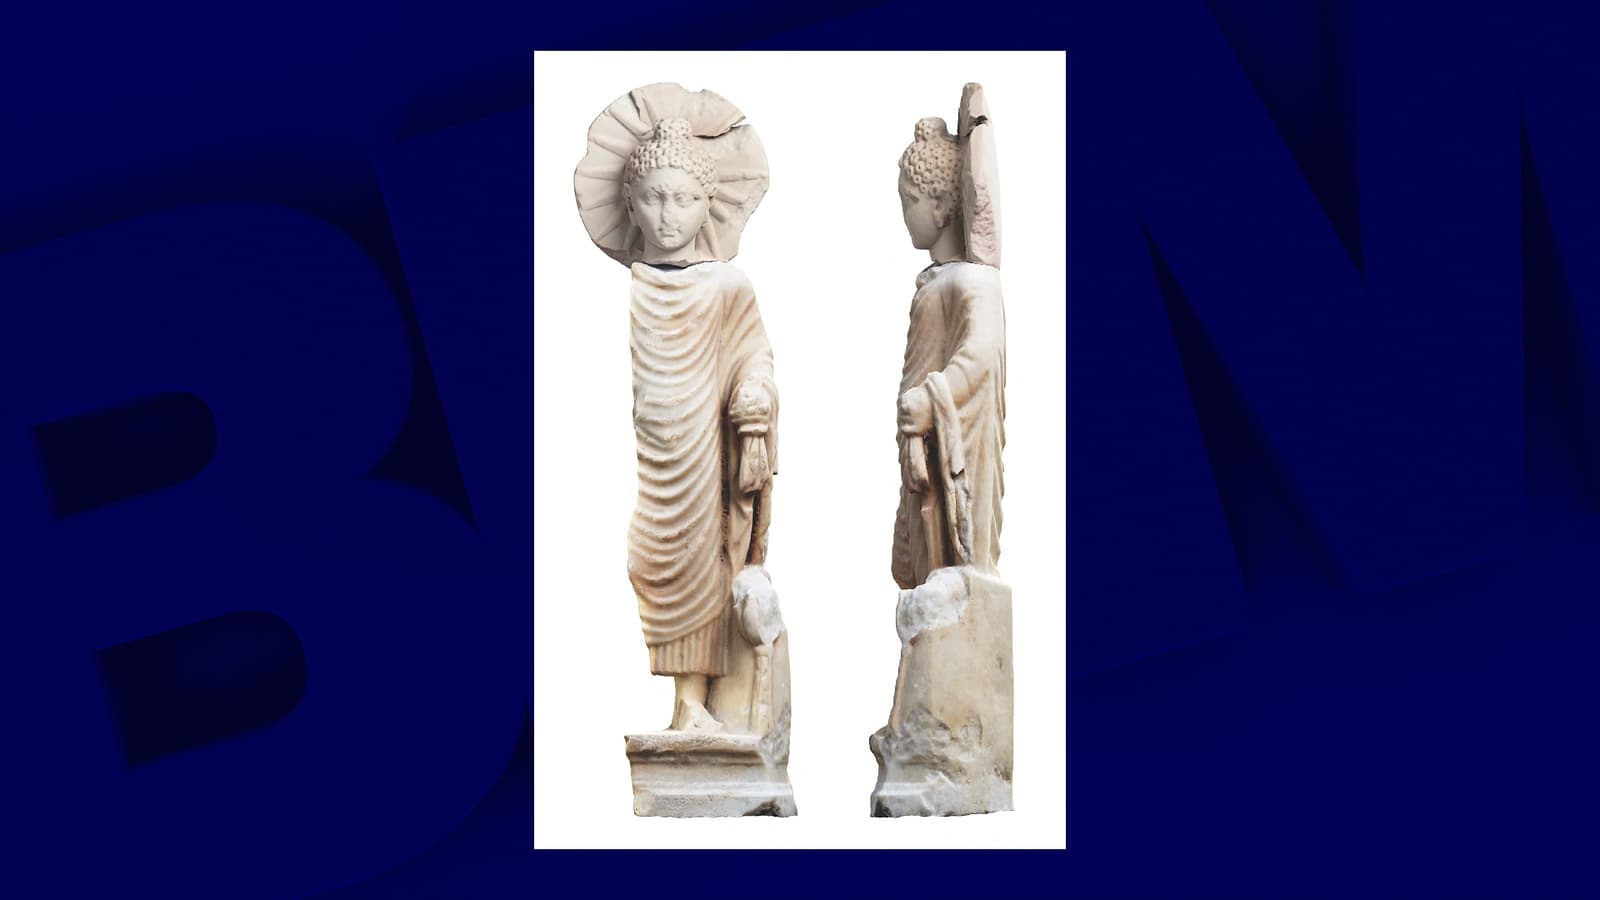 Ambre et allergies - Page 2 Une-statue-de-Bouddha-a-ete-decouverte-sur-un-site-antique-en-Egypte-1625980